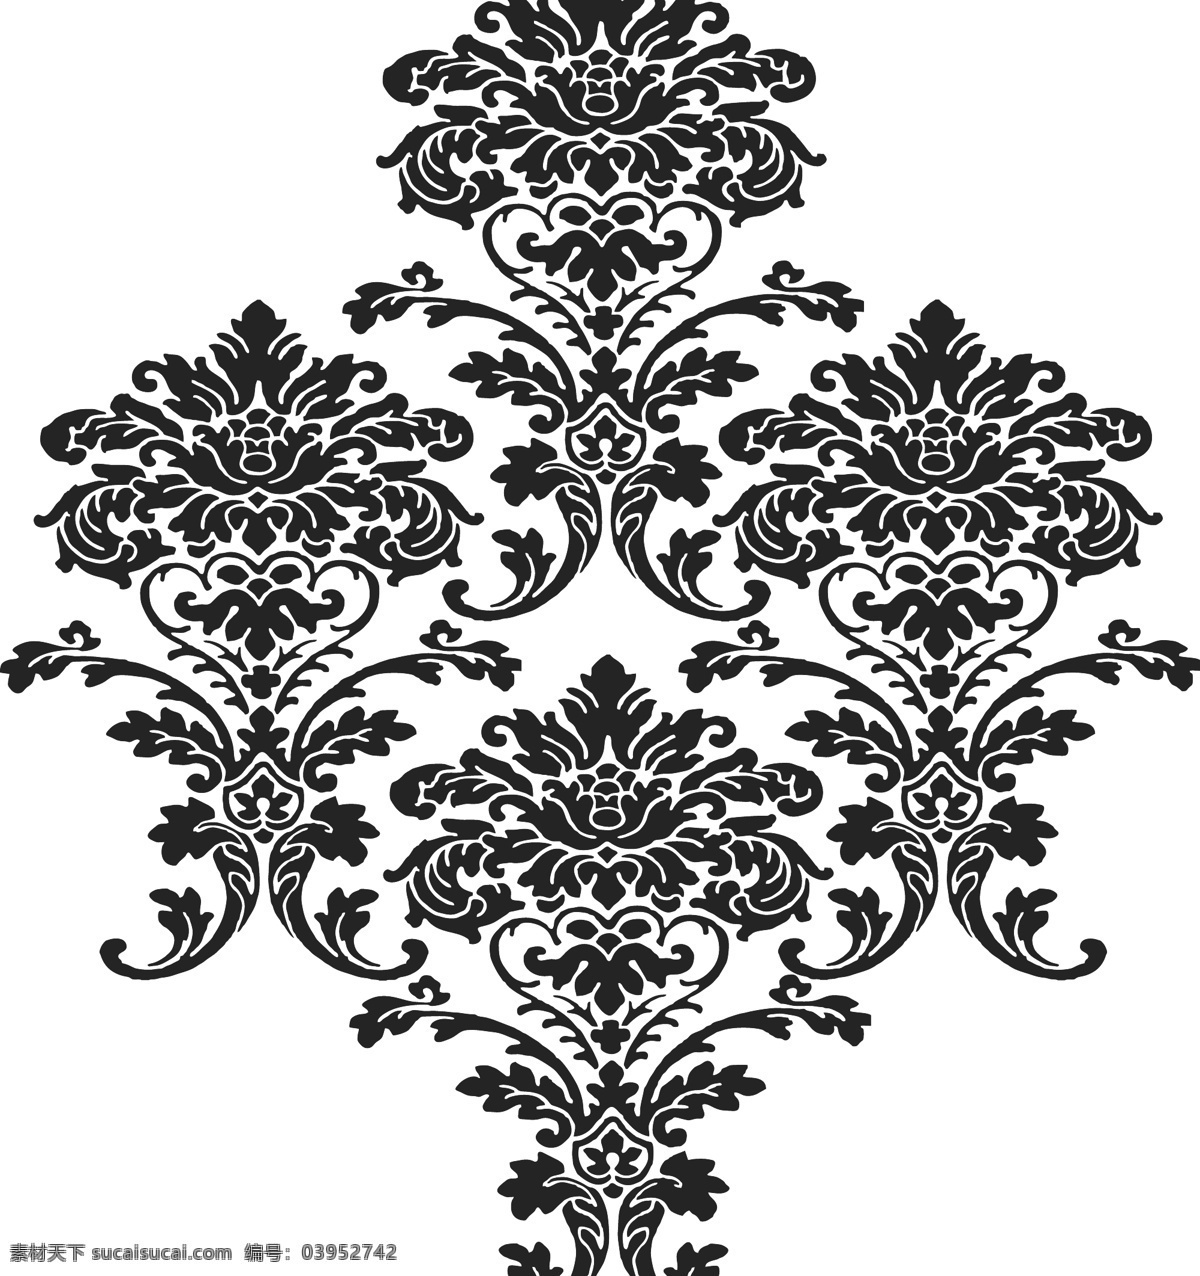 涂料 印花 丝网 模具 黑白 图案 花边花纹 底纹边框